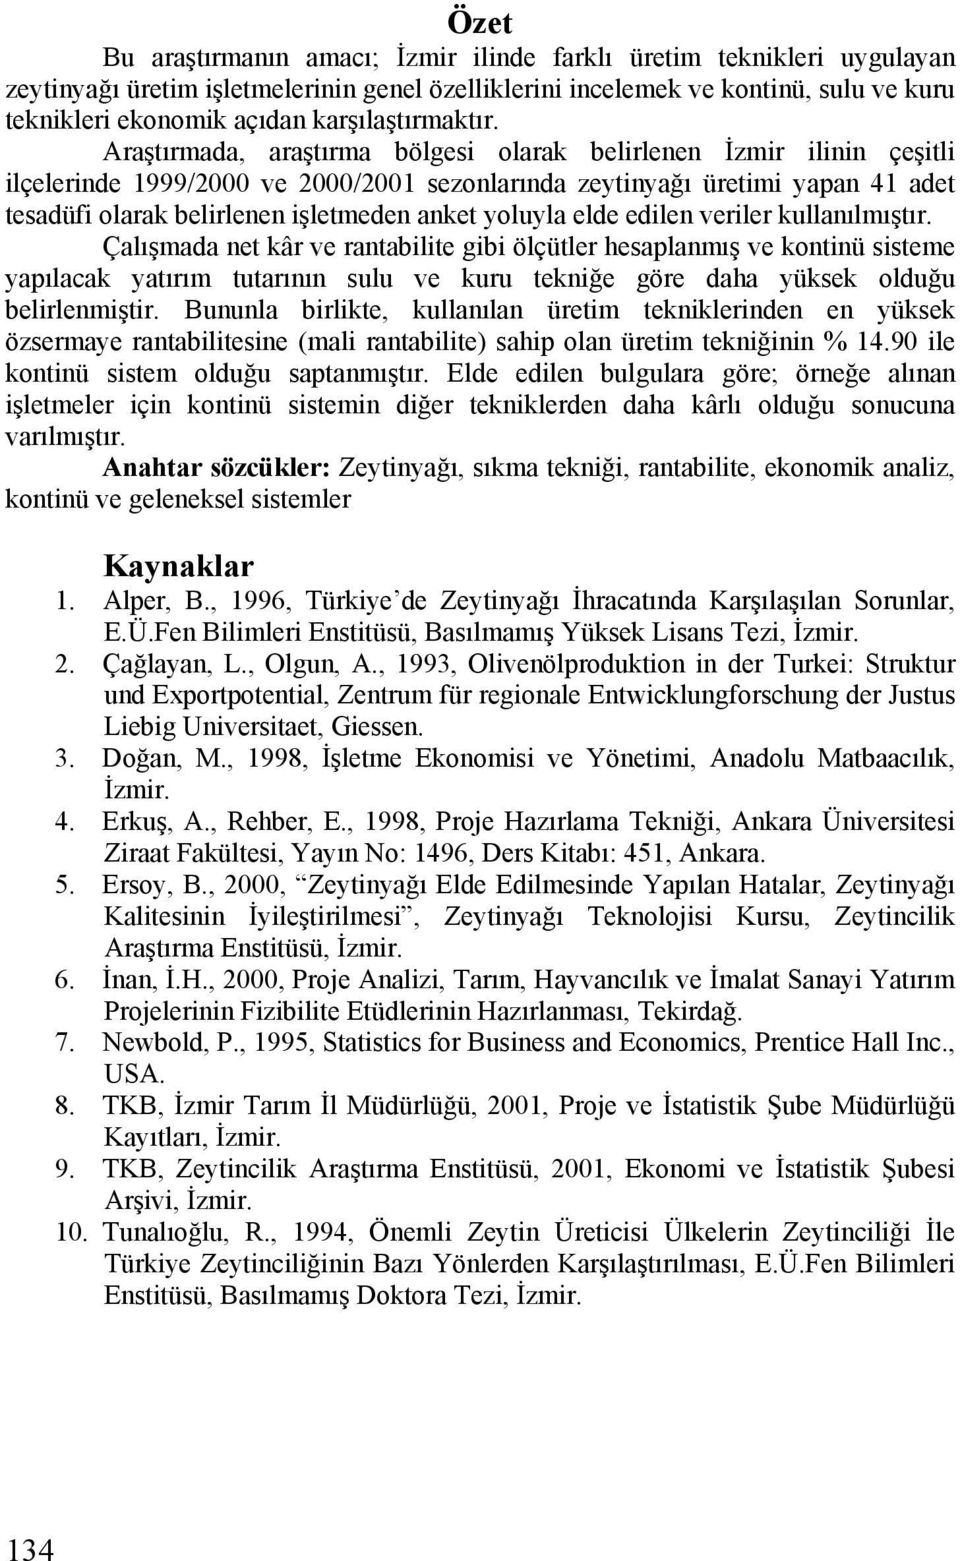 Araştırmada, araştırma bölgesi olarak belirlenen İzmir ilinin çeşitli ilçelerinde 1999/2000 ve 2000/2001 sezonlarında zeytinyağı üretimi yapan 41 adet tesadüfi olarak belirlenen işletmeden anket